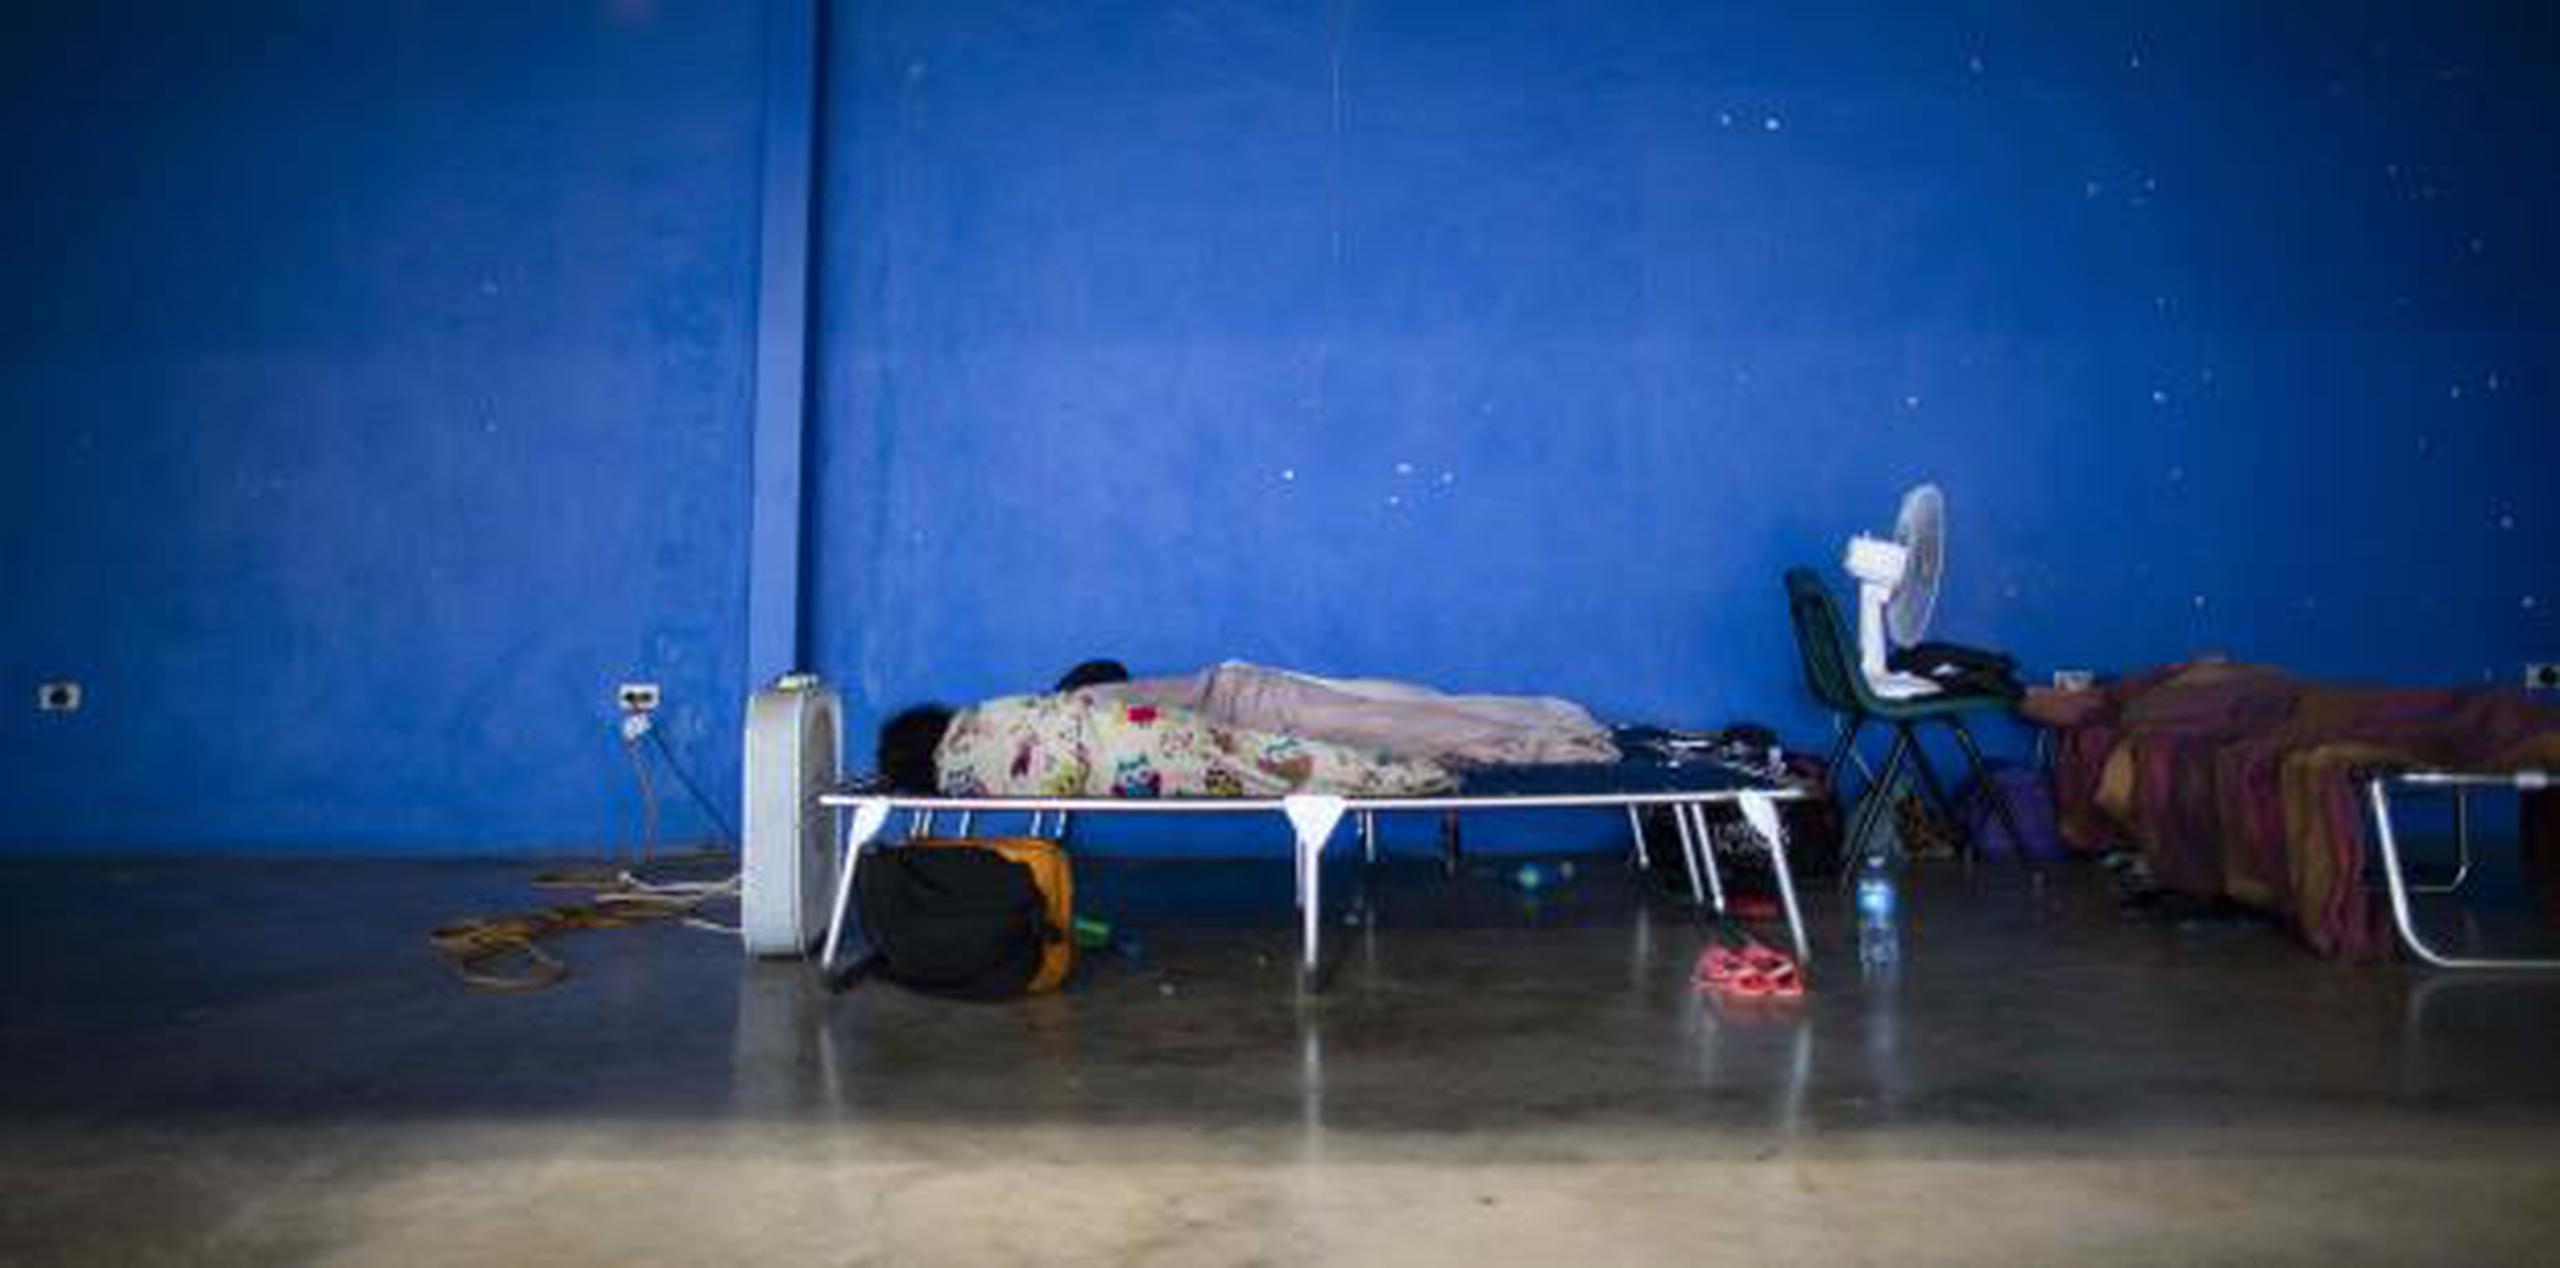 Una persona duerme en un catre en el refugio de Canóvanas. (tonito.zayas@gfrmedia.com)